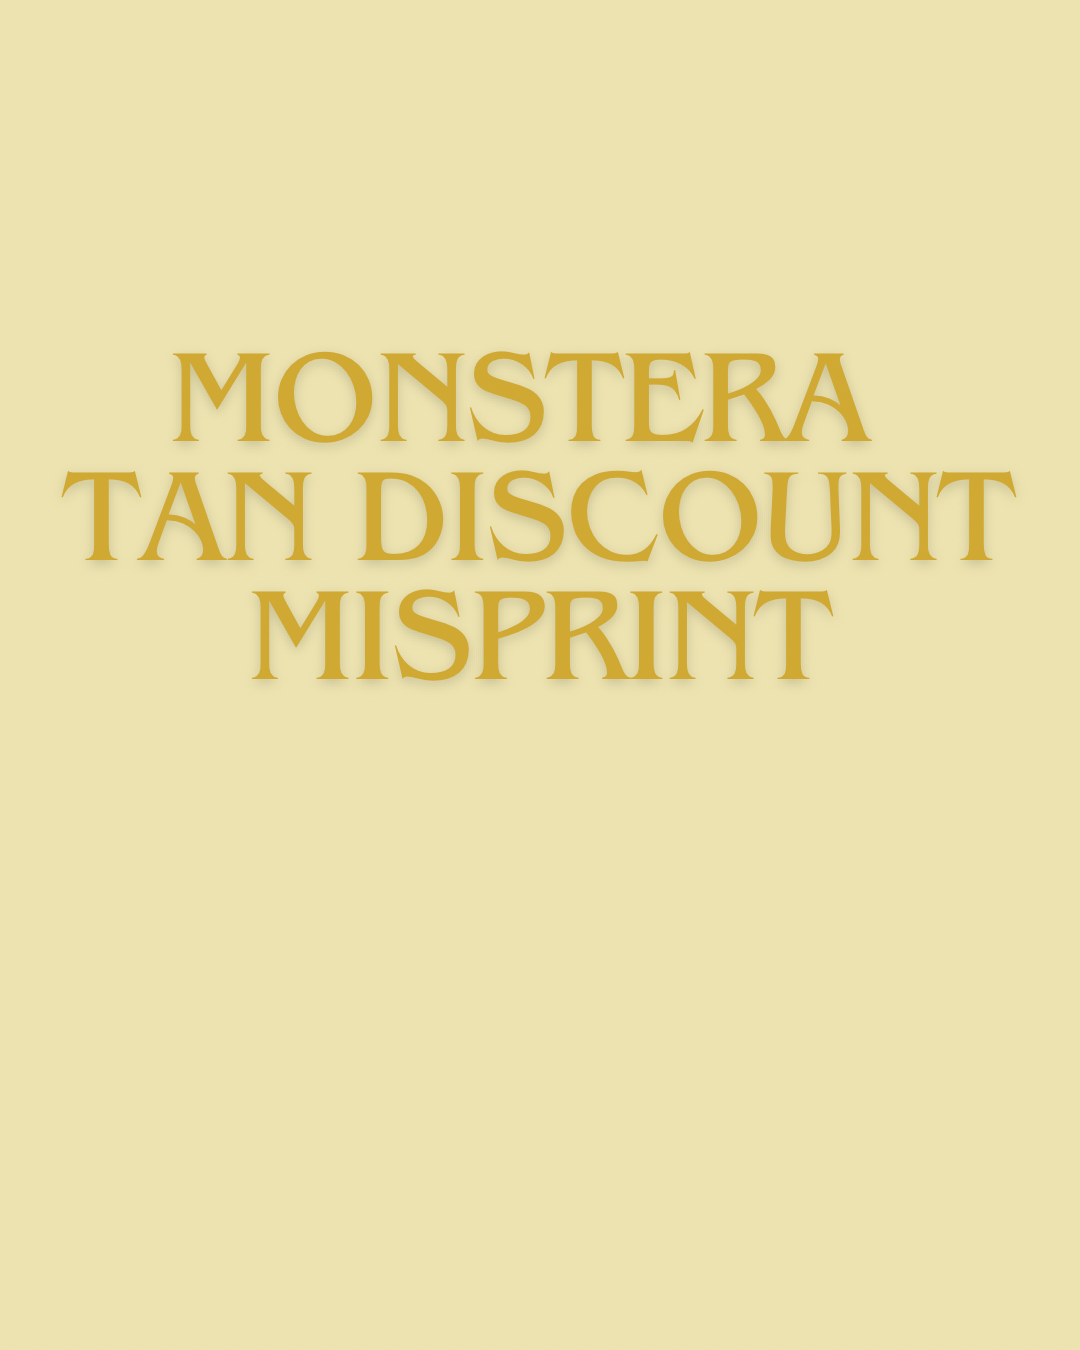 MISPRINT - Tan Monstera R.A.R.E shirt